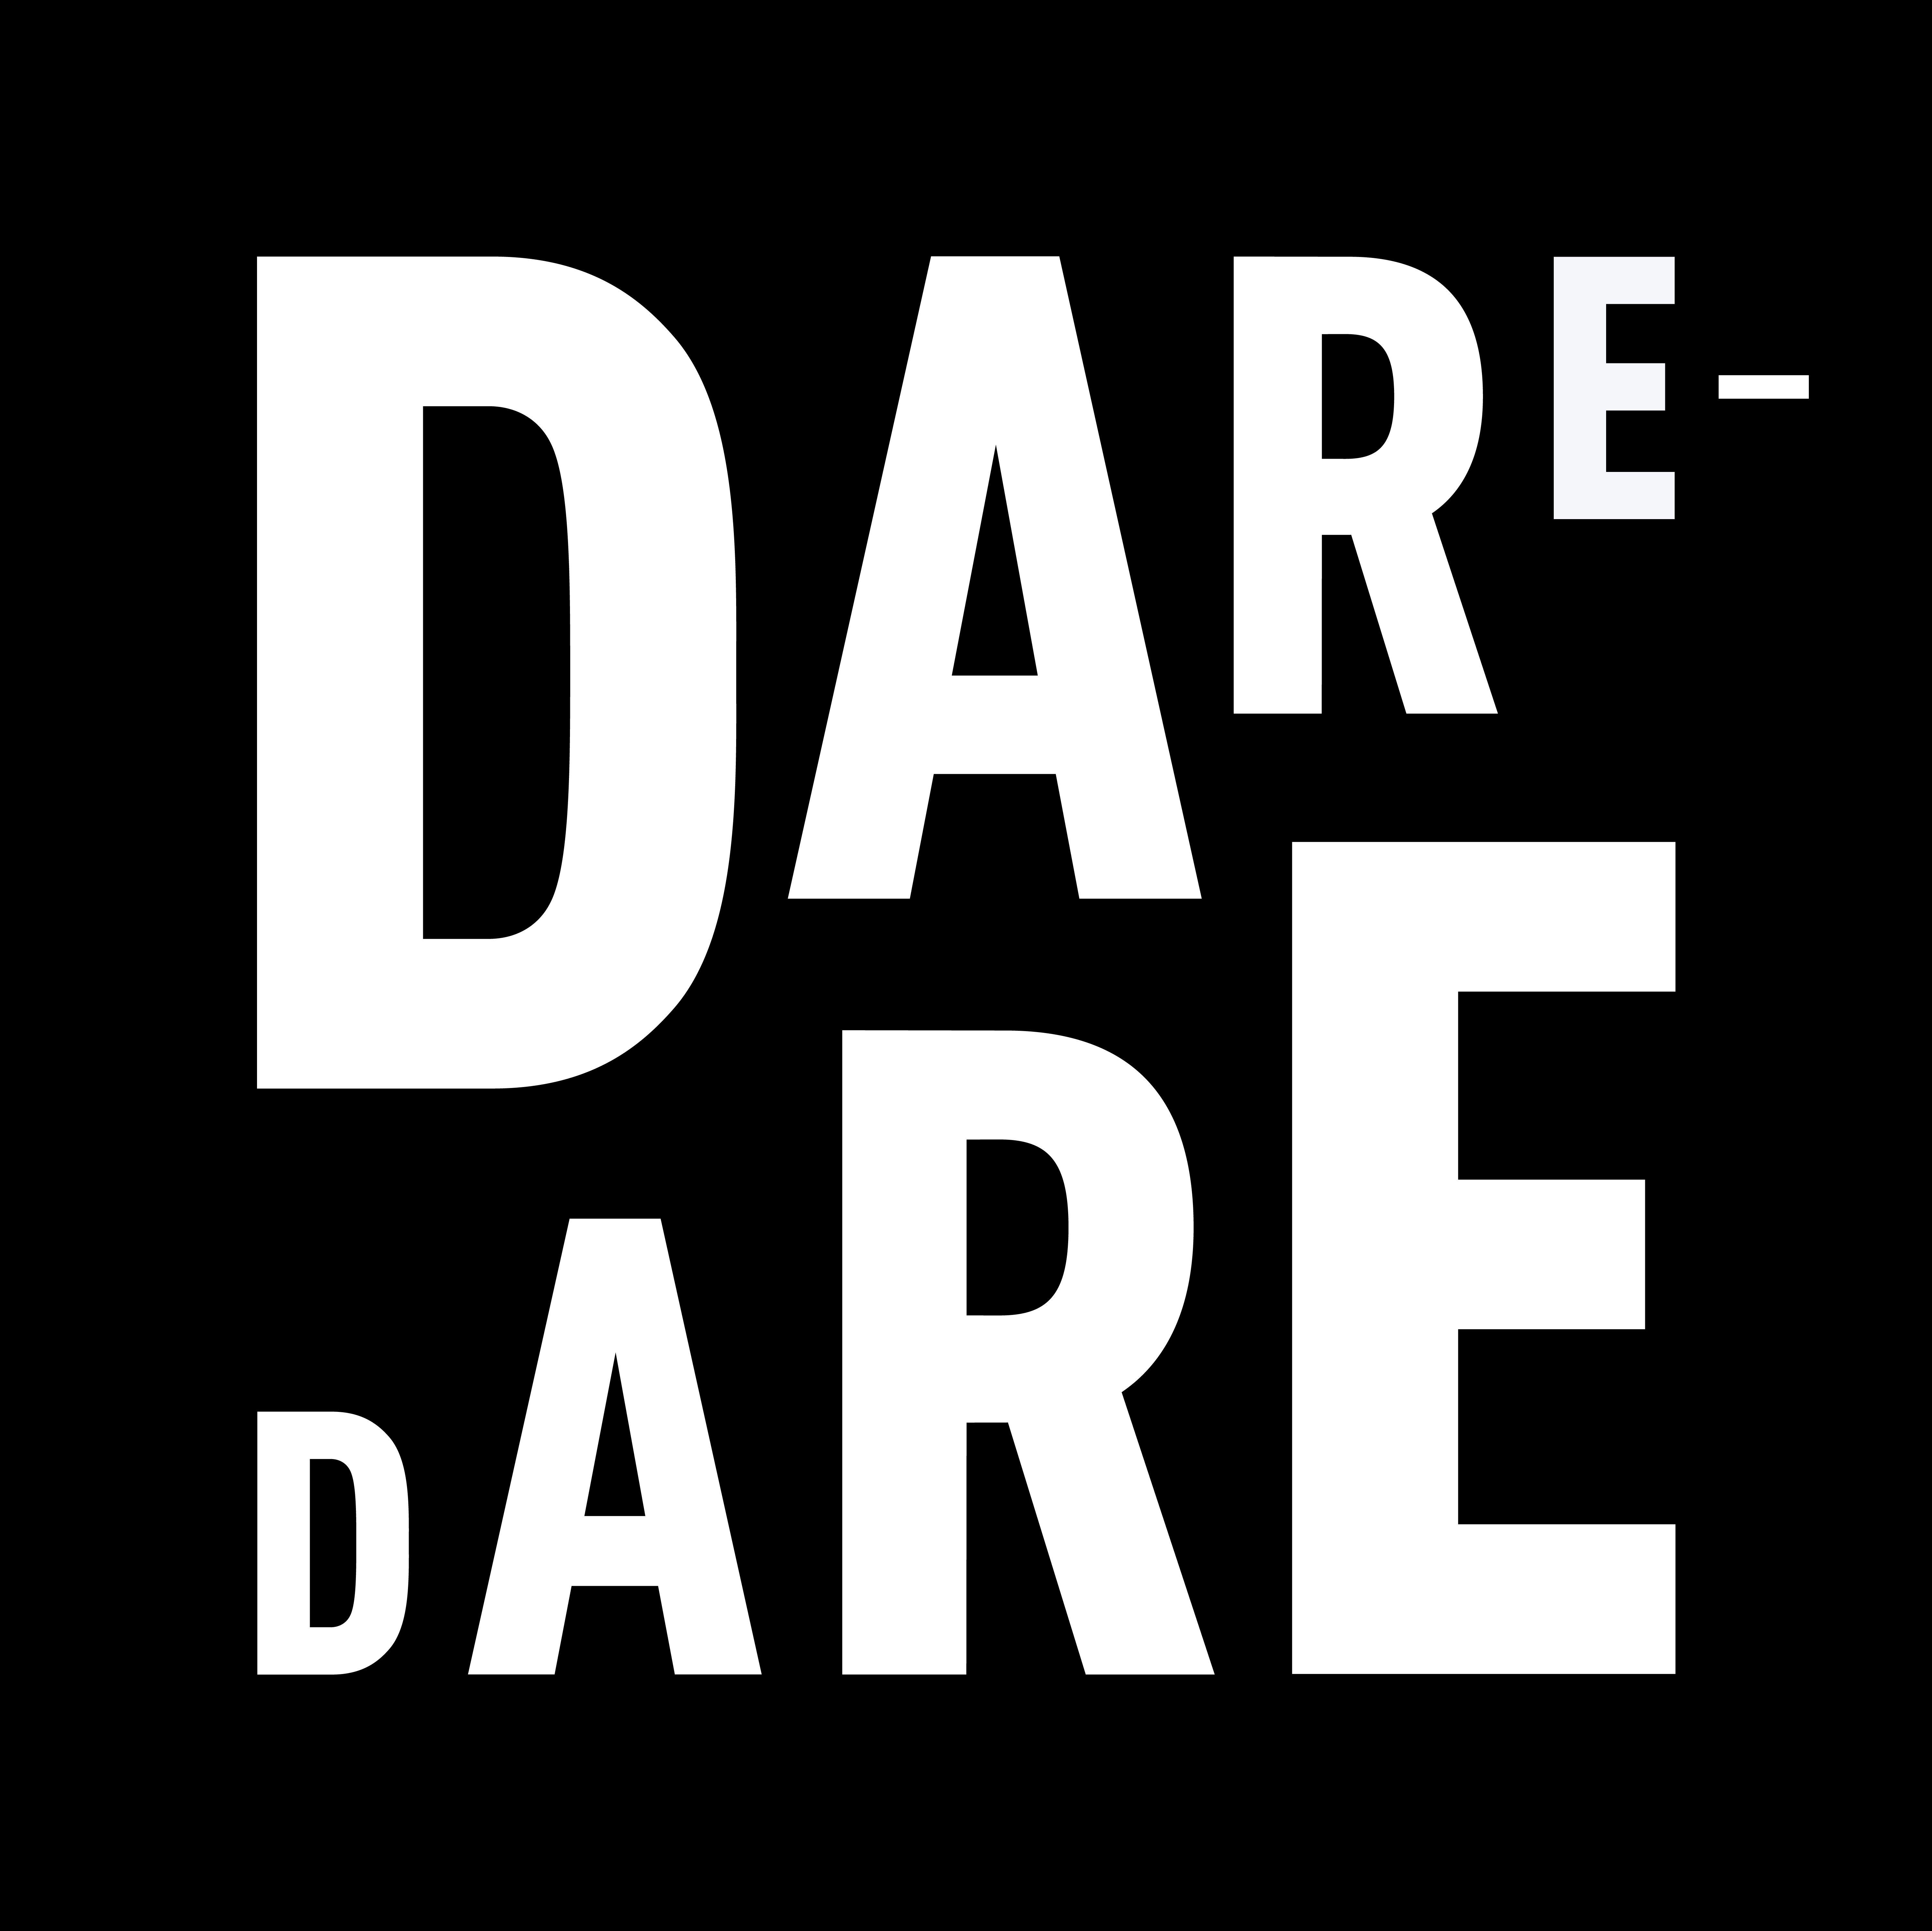 D.A.r.e Logo - File:Logo de DARE-DARE.jpg - Wikimedia Commons